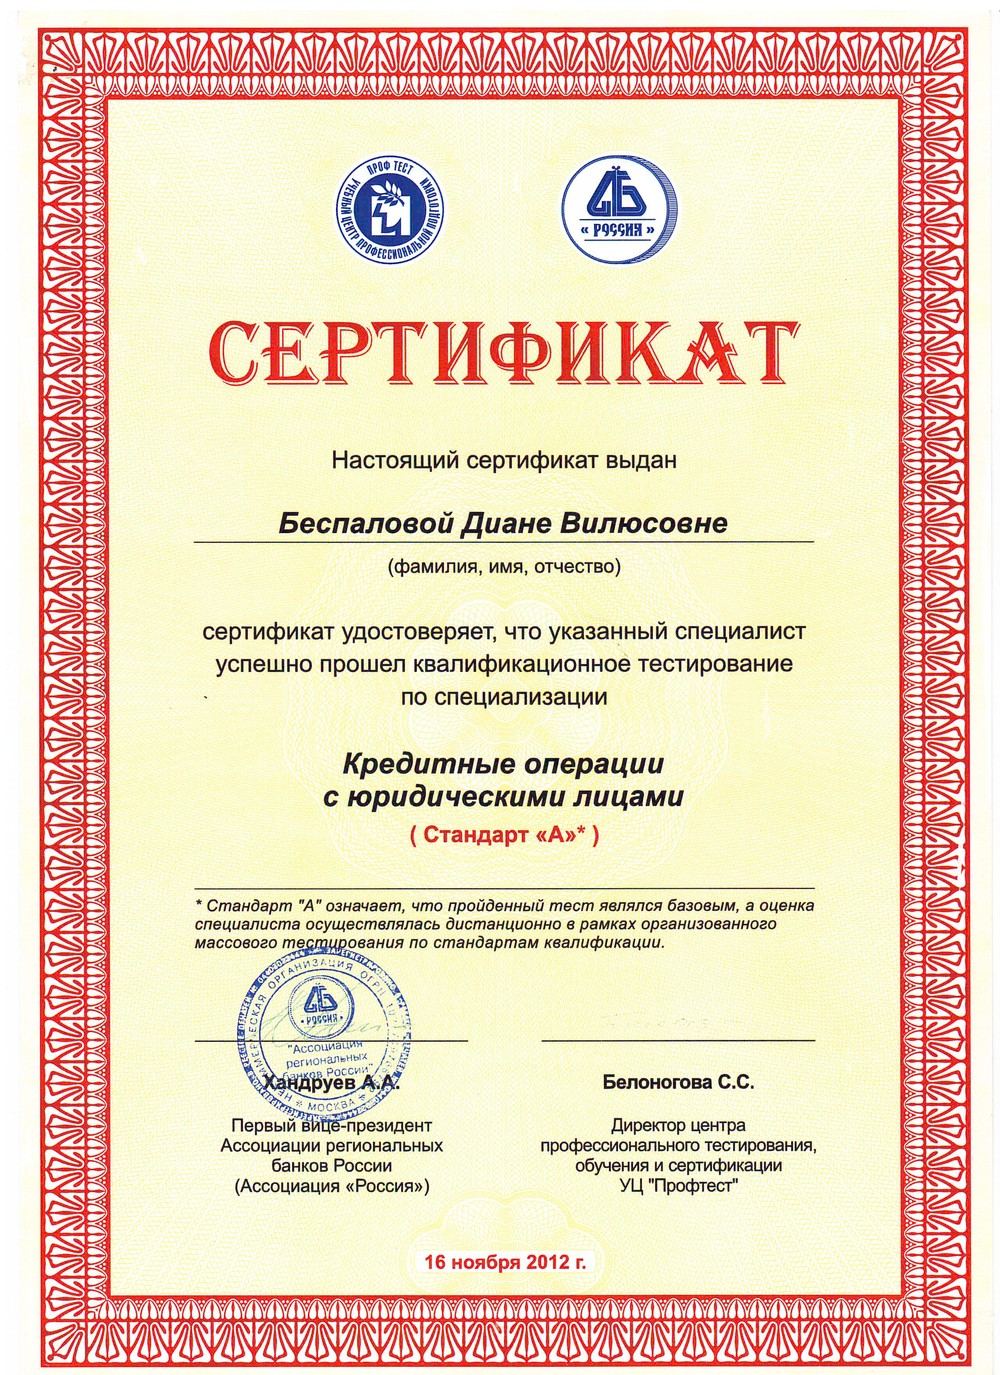 Сертификат на правильное питание